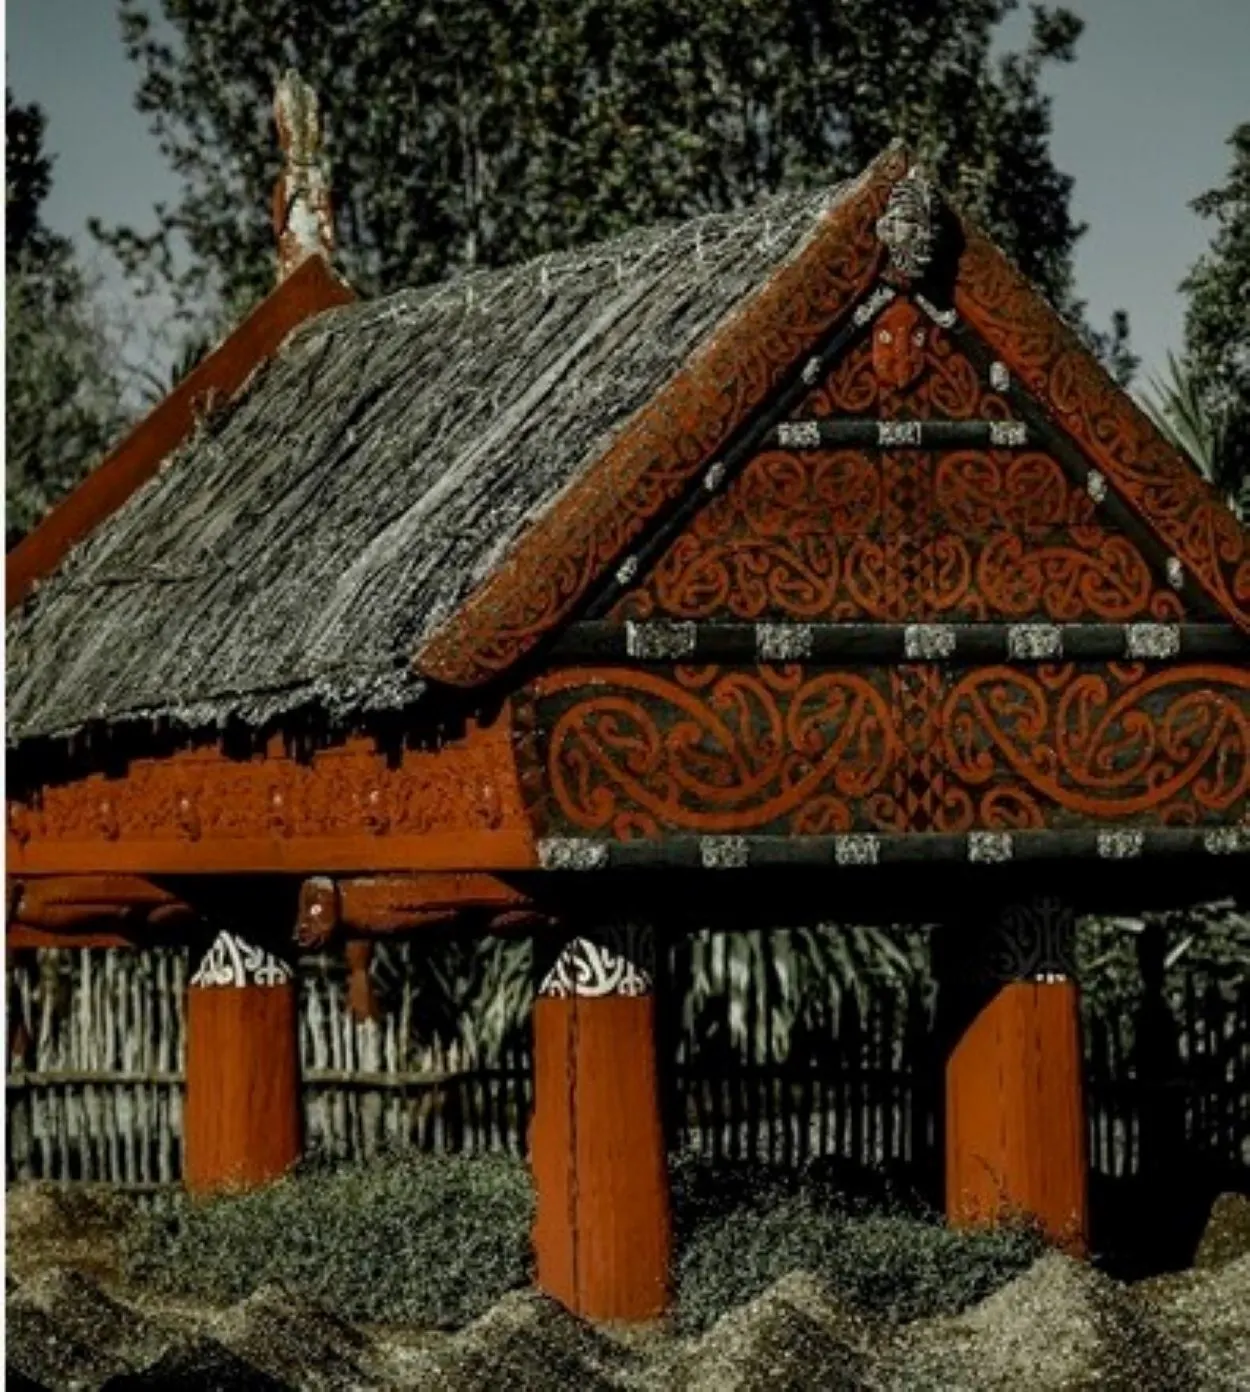  Kāda ir atšķirība starp samoiešu, maoru un havajiešu valodu? (Apspriests) - Visas atšķirības